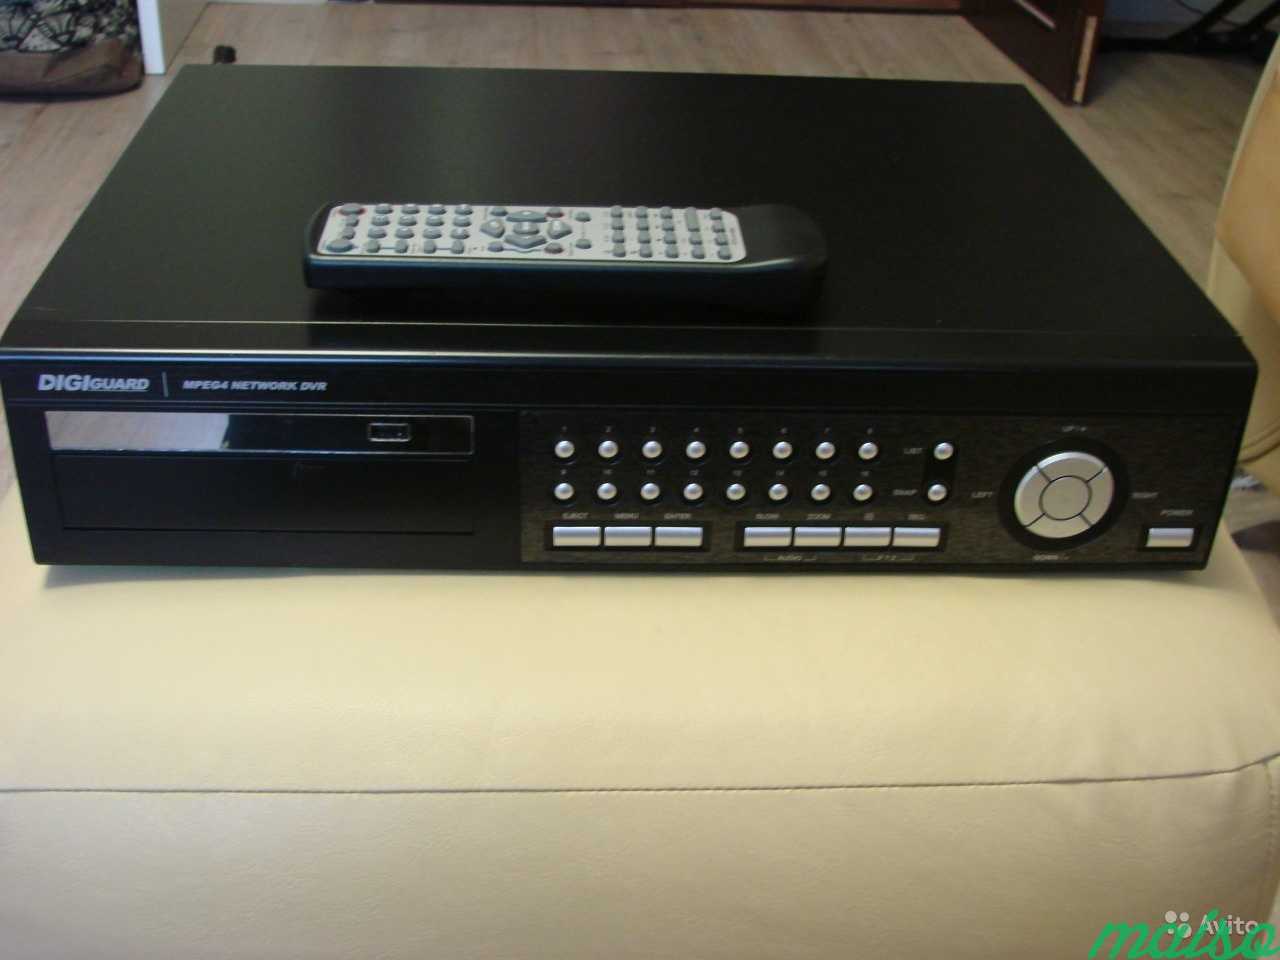 Видеорегистратор 16 ти канальный. CPCAM Pasa Supreme MPEG-4 DVR. Дисковый массив CPCAM CPD-670. Ремонт cpd507zhc видеорегистратор CPCAM. CPCAM Pasa Supreme MPEG-4 DVR цена.